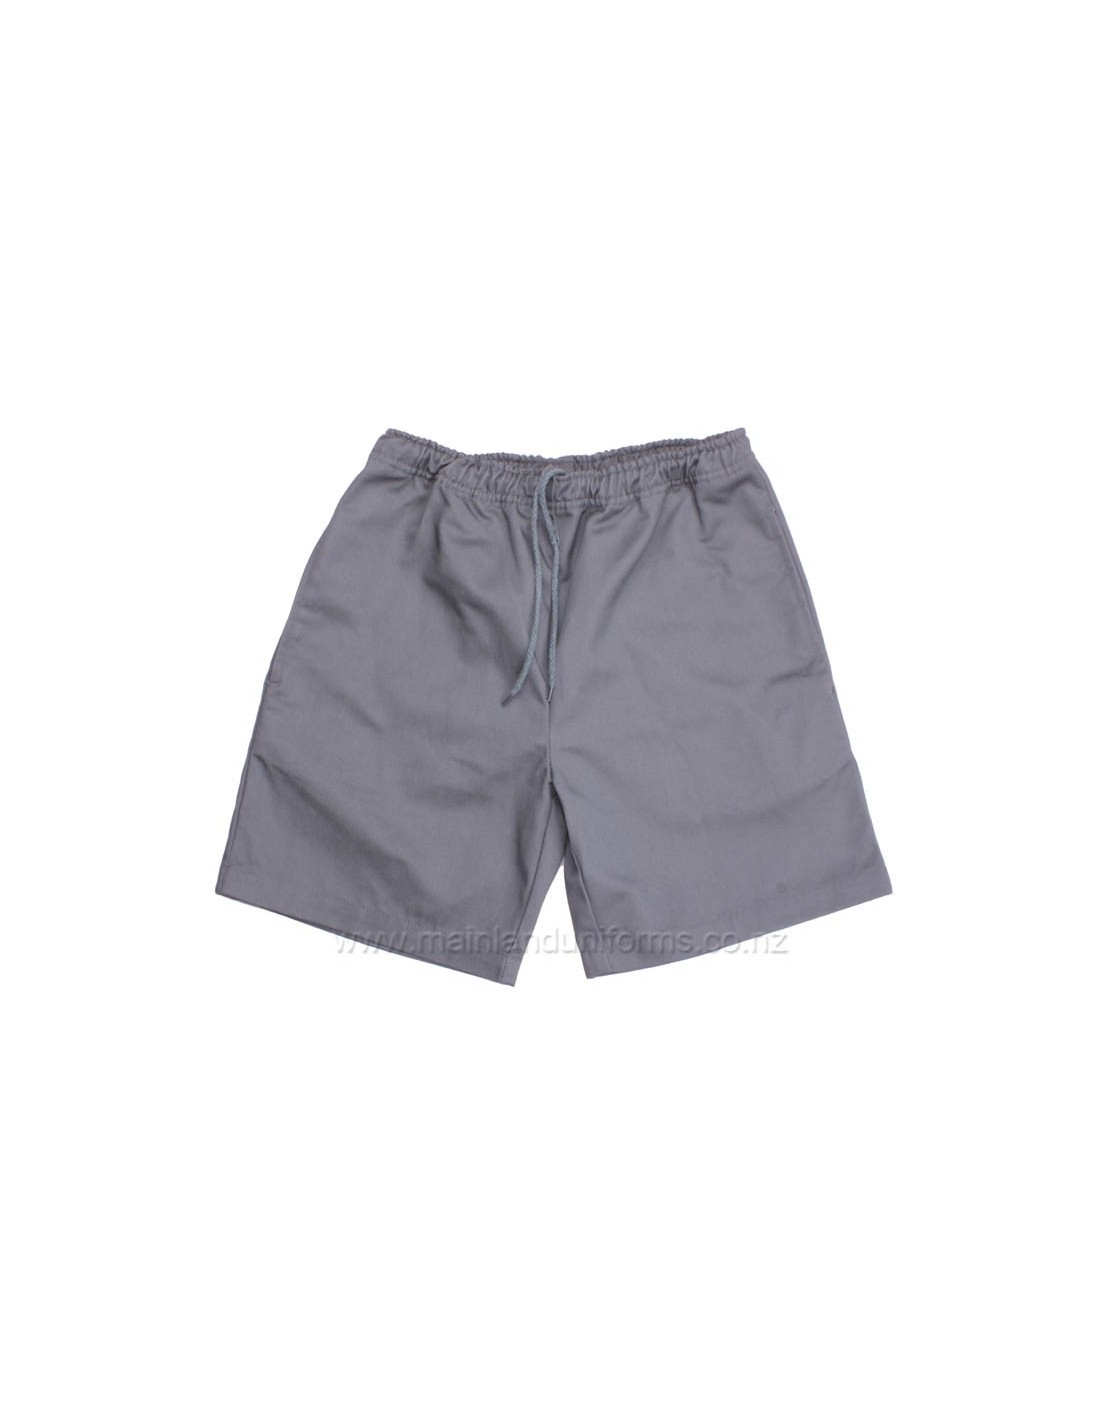 Grey Full Elastic Drill Shorts